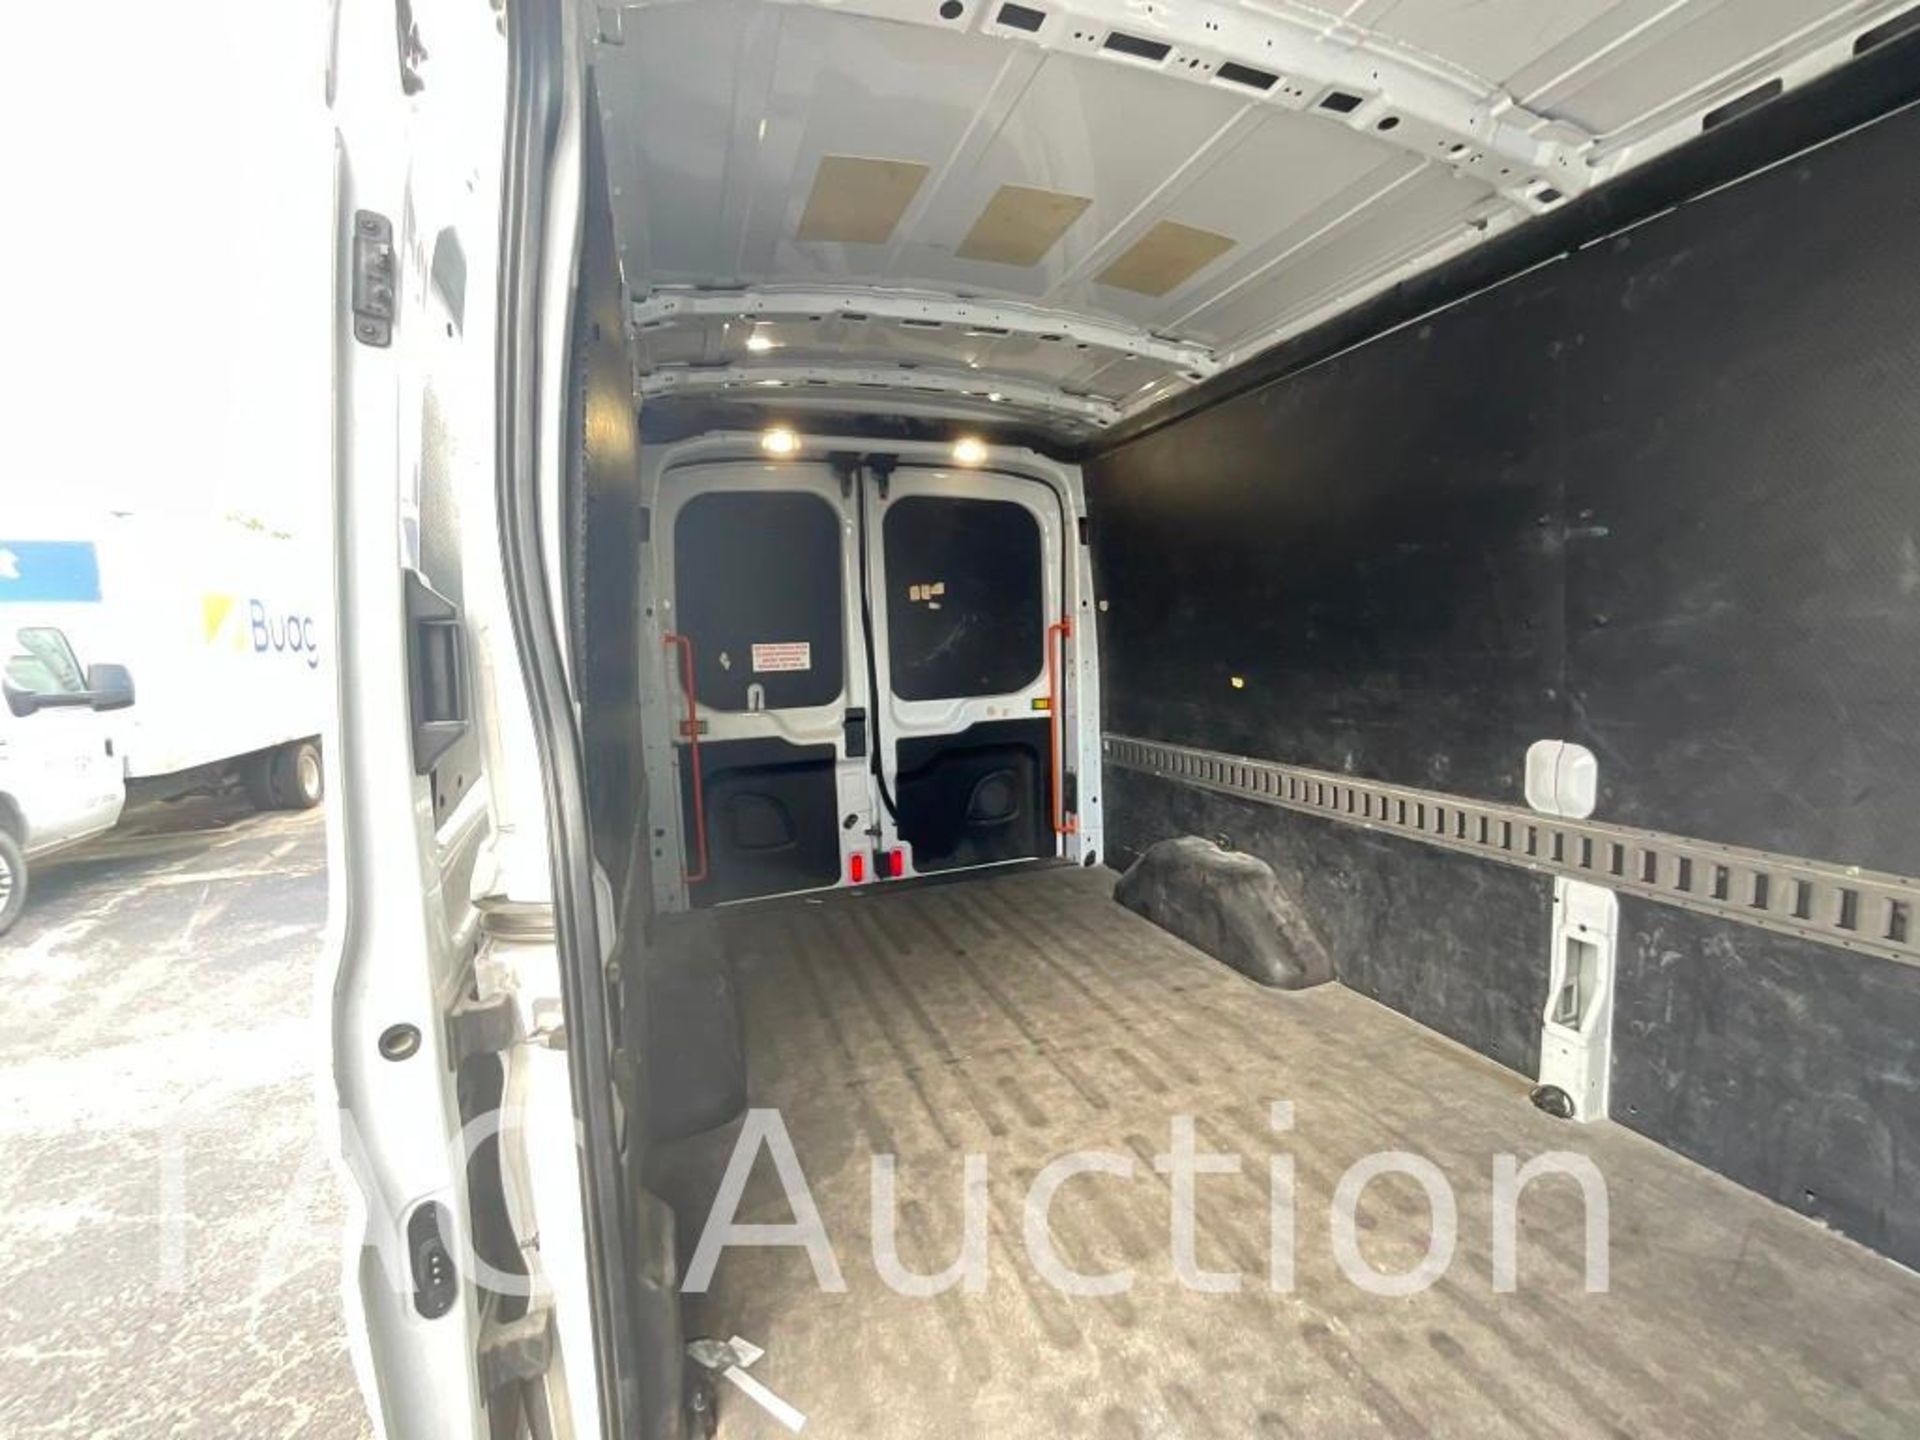 2019 Ford Transit 150 Cargo Van - Image 28 of 47